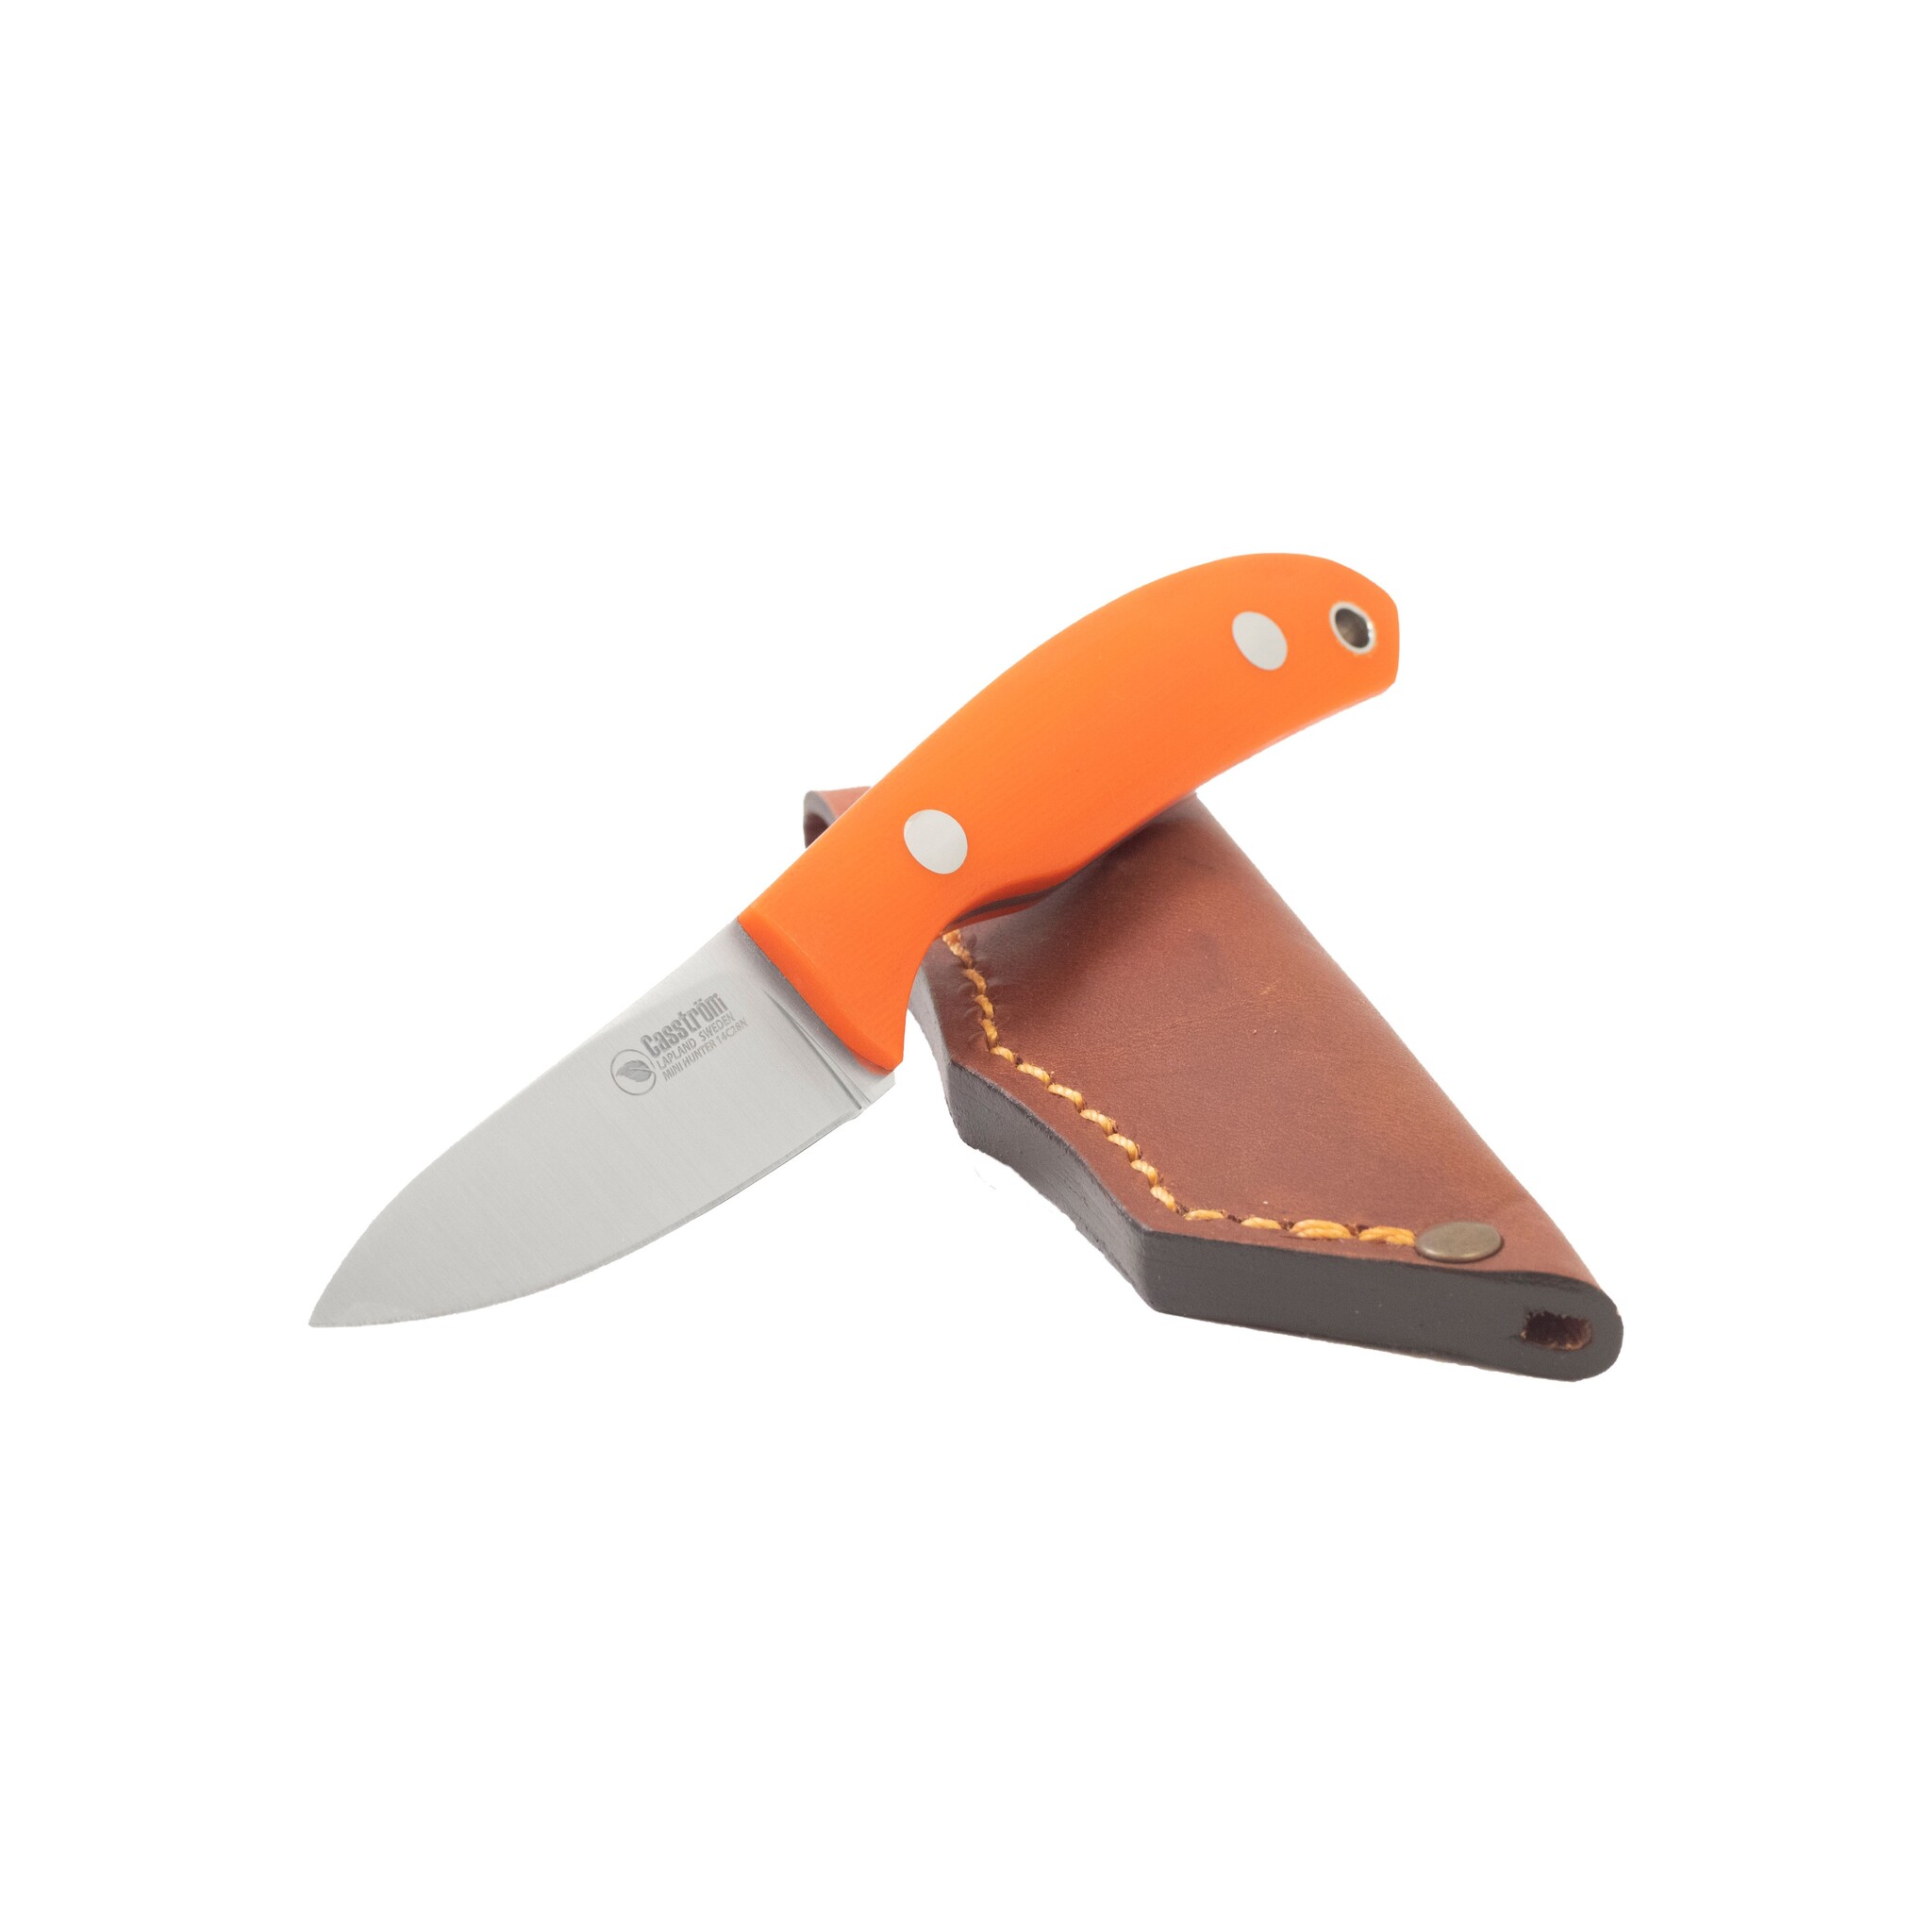 Casström No. 10 Swedish Forest Knife Orange G10, 14C28N Flat Grind